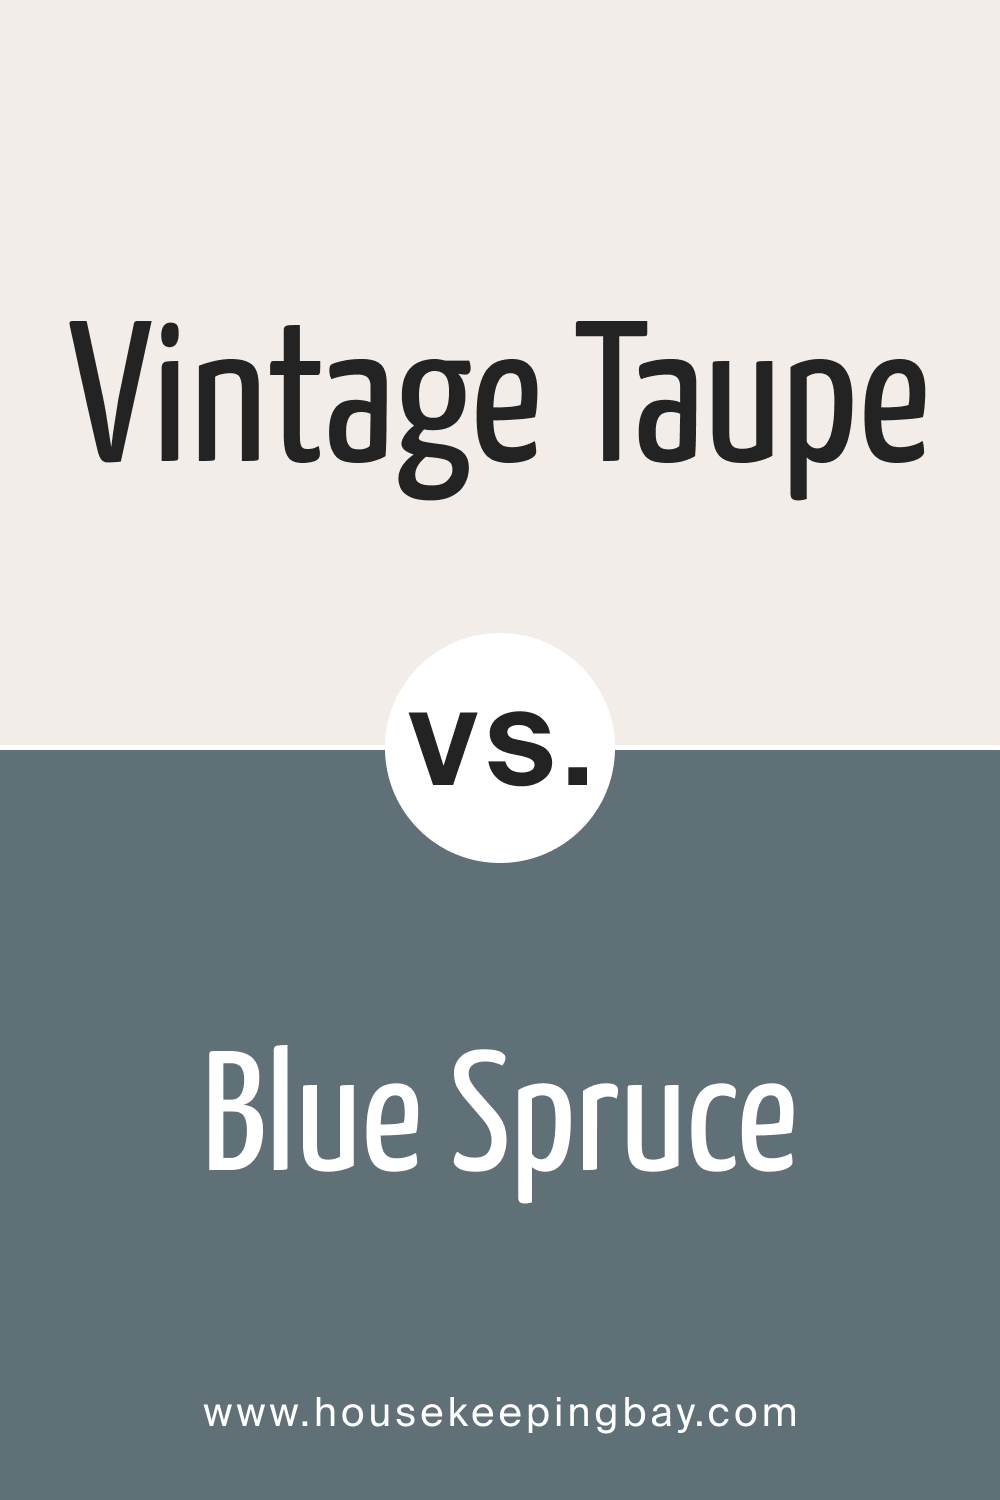 Vintage Taupe 2110 70 vs. BM 1637 Blue Spruce